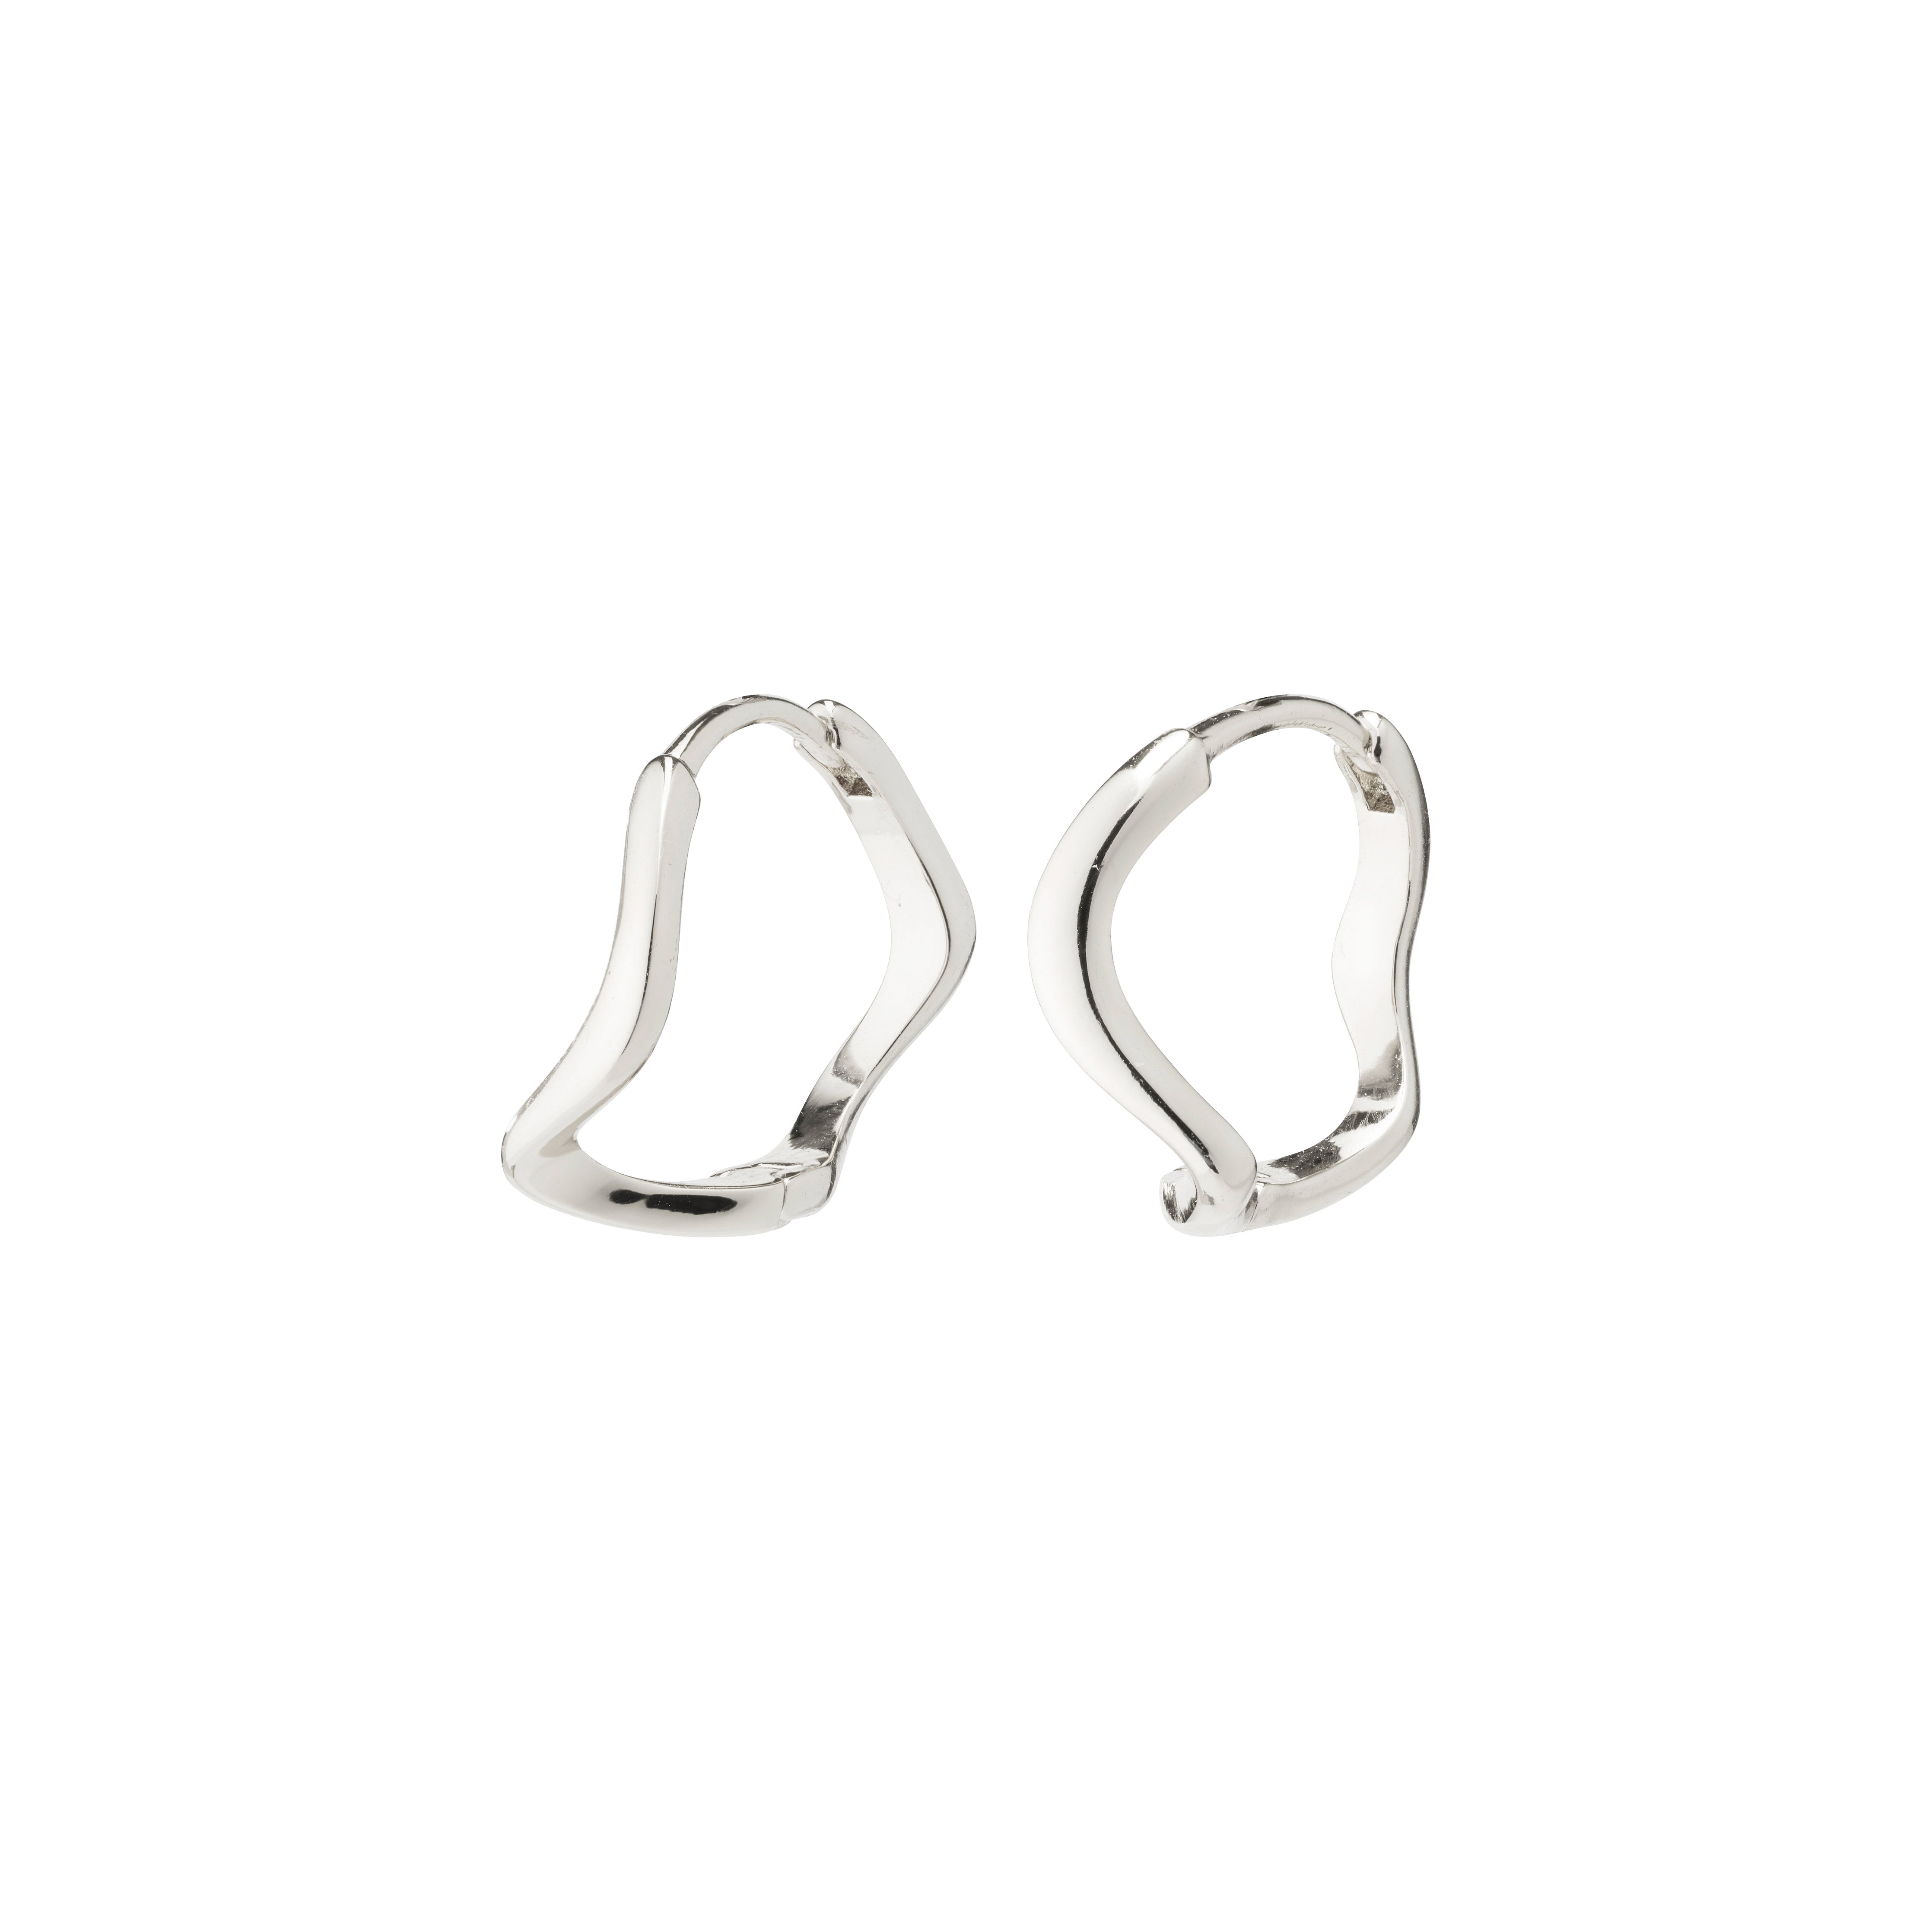 ALBERTE organic shape hoop earrings silver-plated